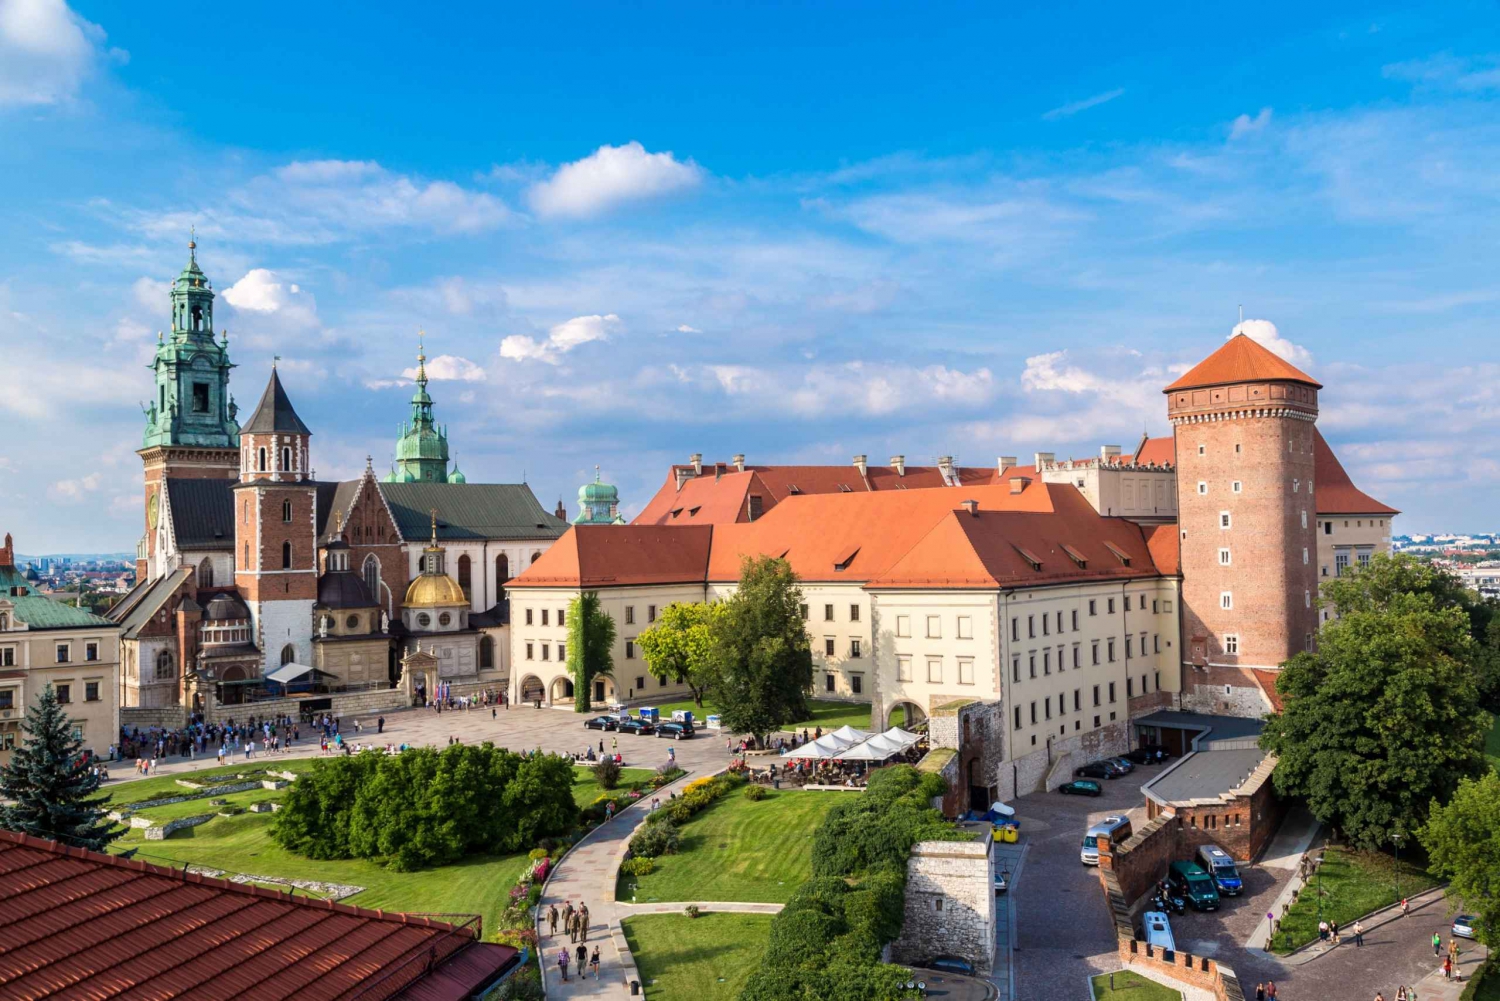 Kraków: Wawel Castle, Jewish Quarter, Wieliczka Salt Mine